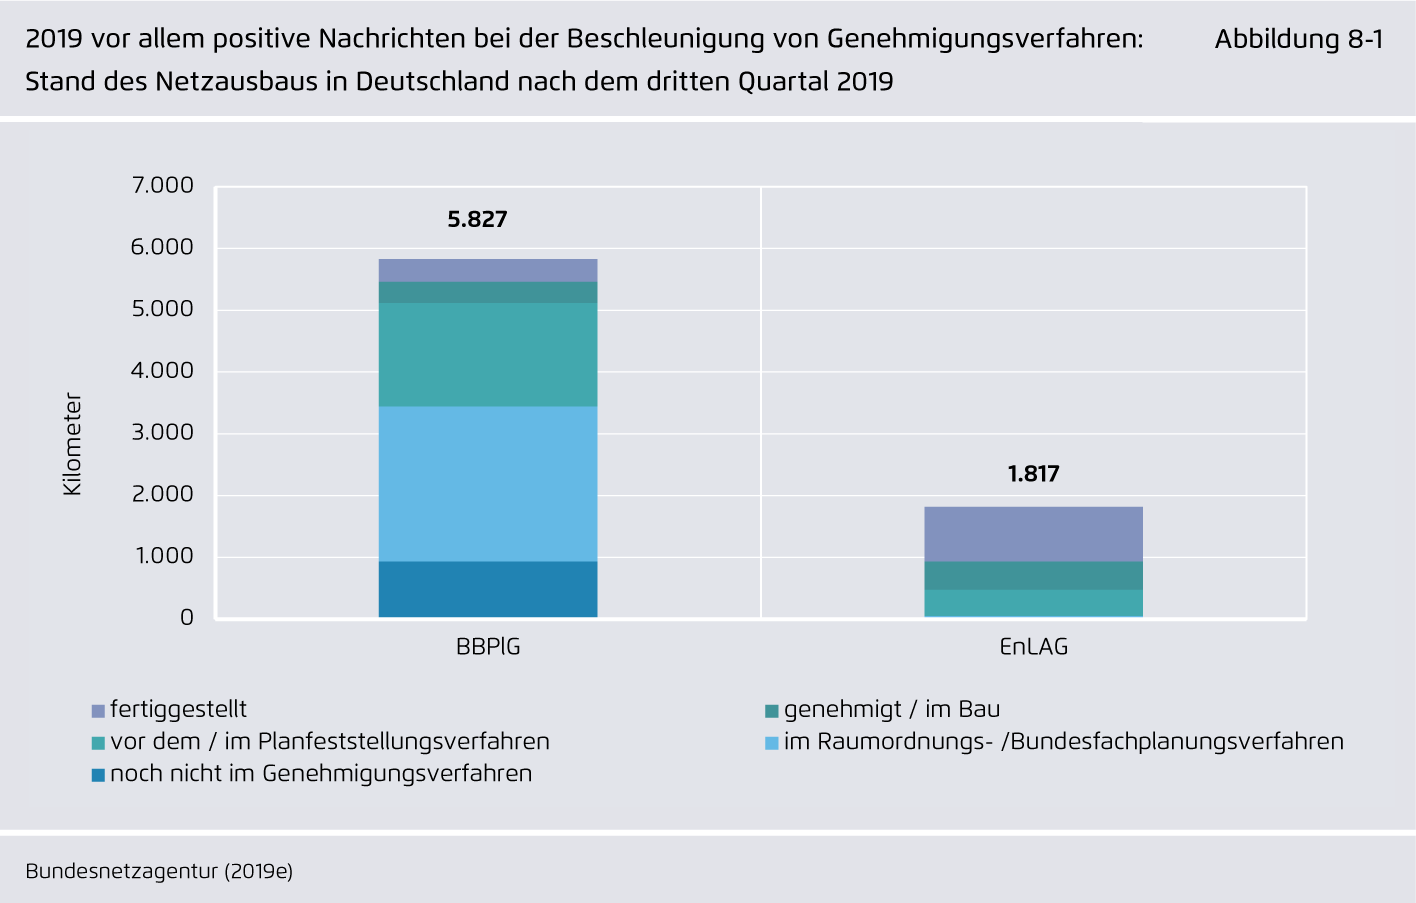 Preview for 2019 vor allem positive Nachrichten bei der Beschleunigung von Genehmigungsverfahren: Stand des Netzausbaus in Deutschland nach dem dritten Quartal 2019